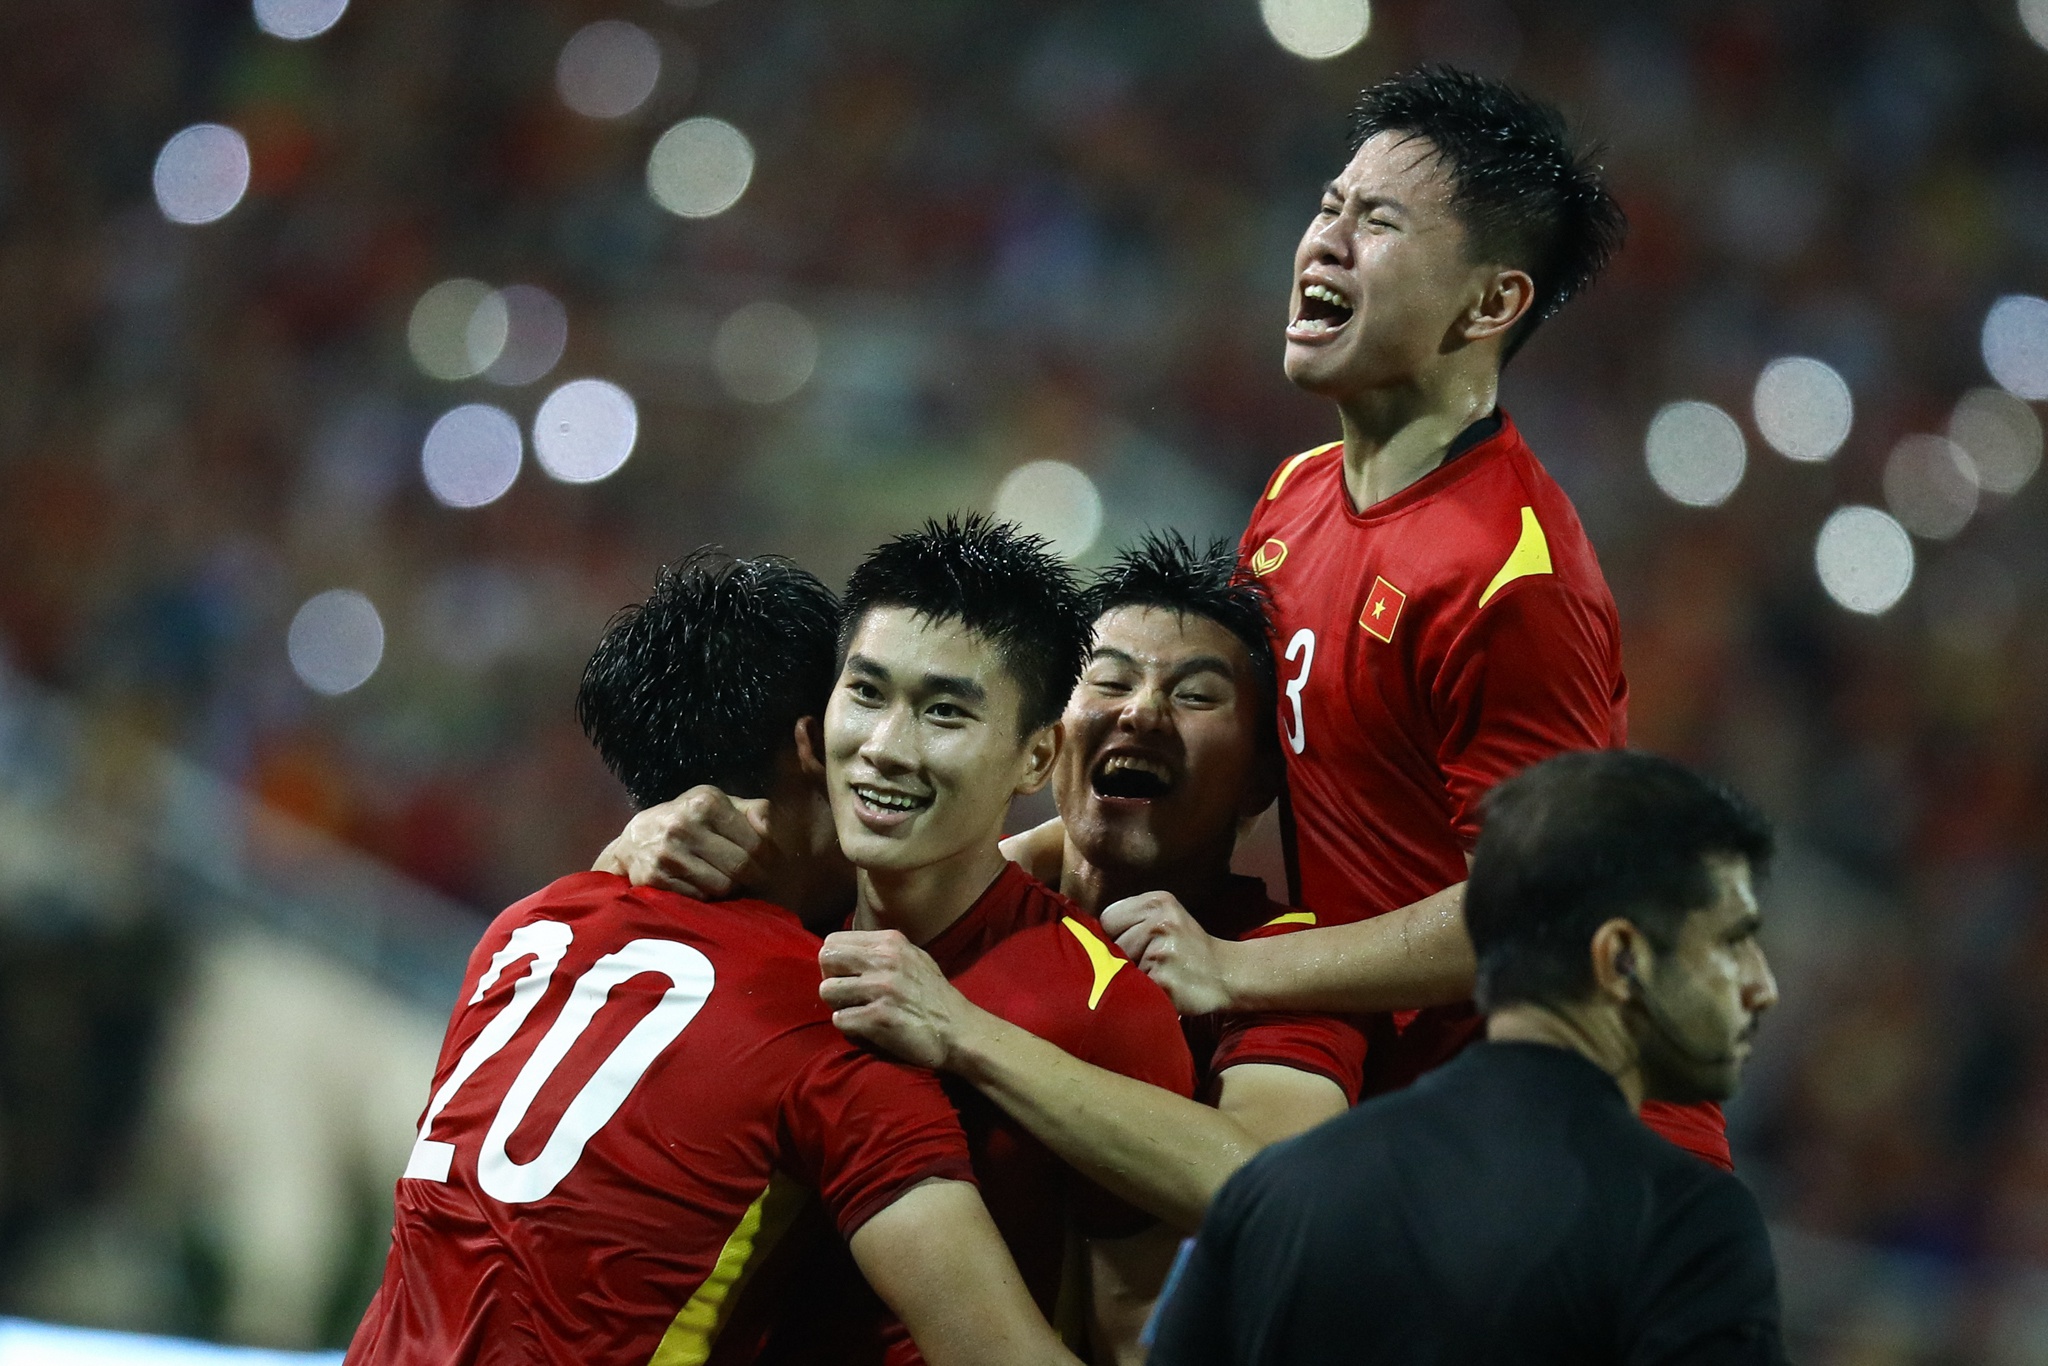 Nhâm Mạnh Dũng cùng các đồng đội ăn mừng bàn thắng mang về HCV cho U23 Việt Nam. Ảnh: Minh Chiến.